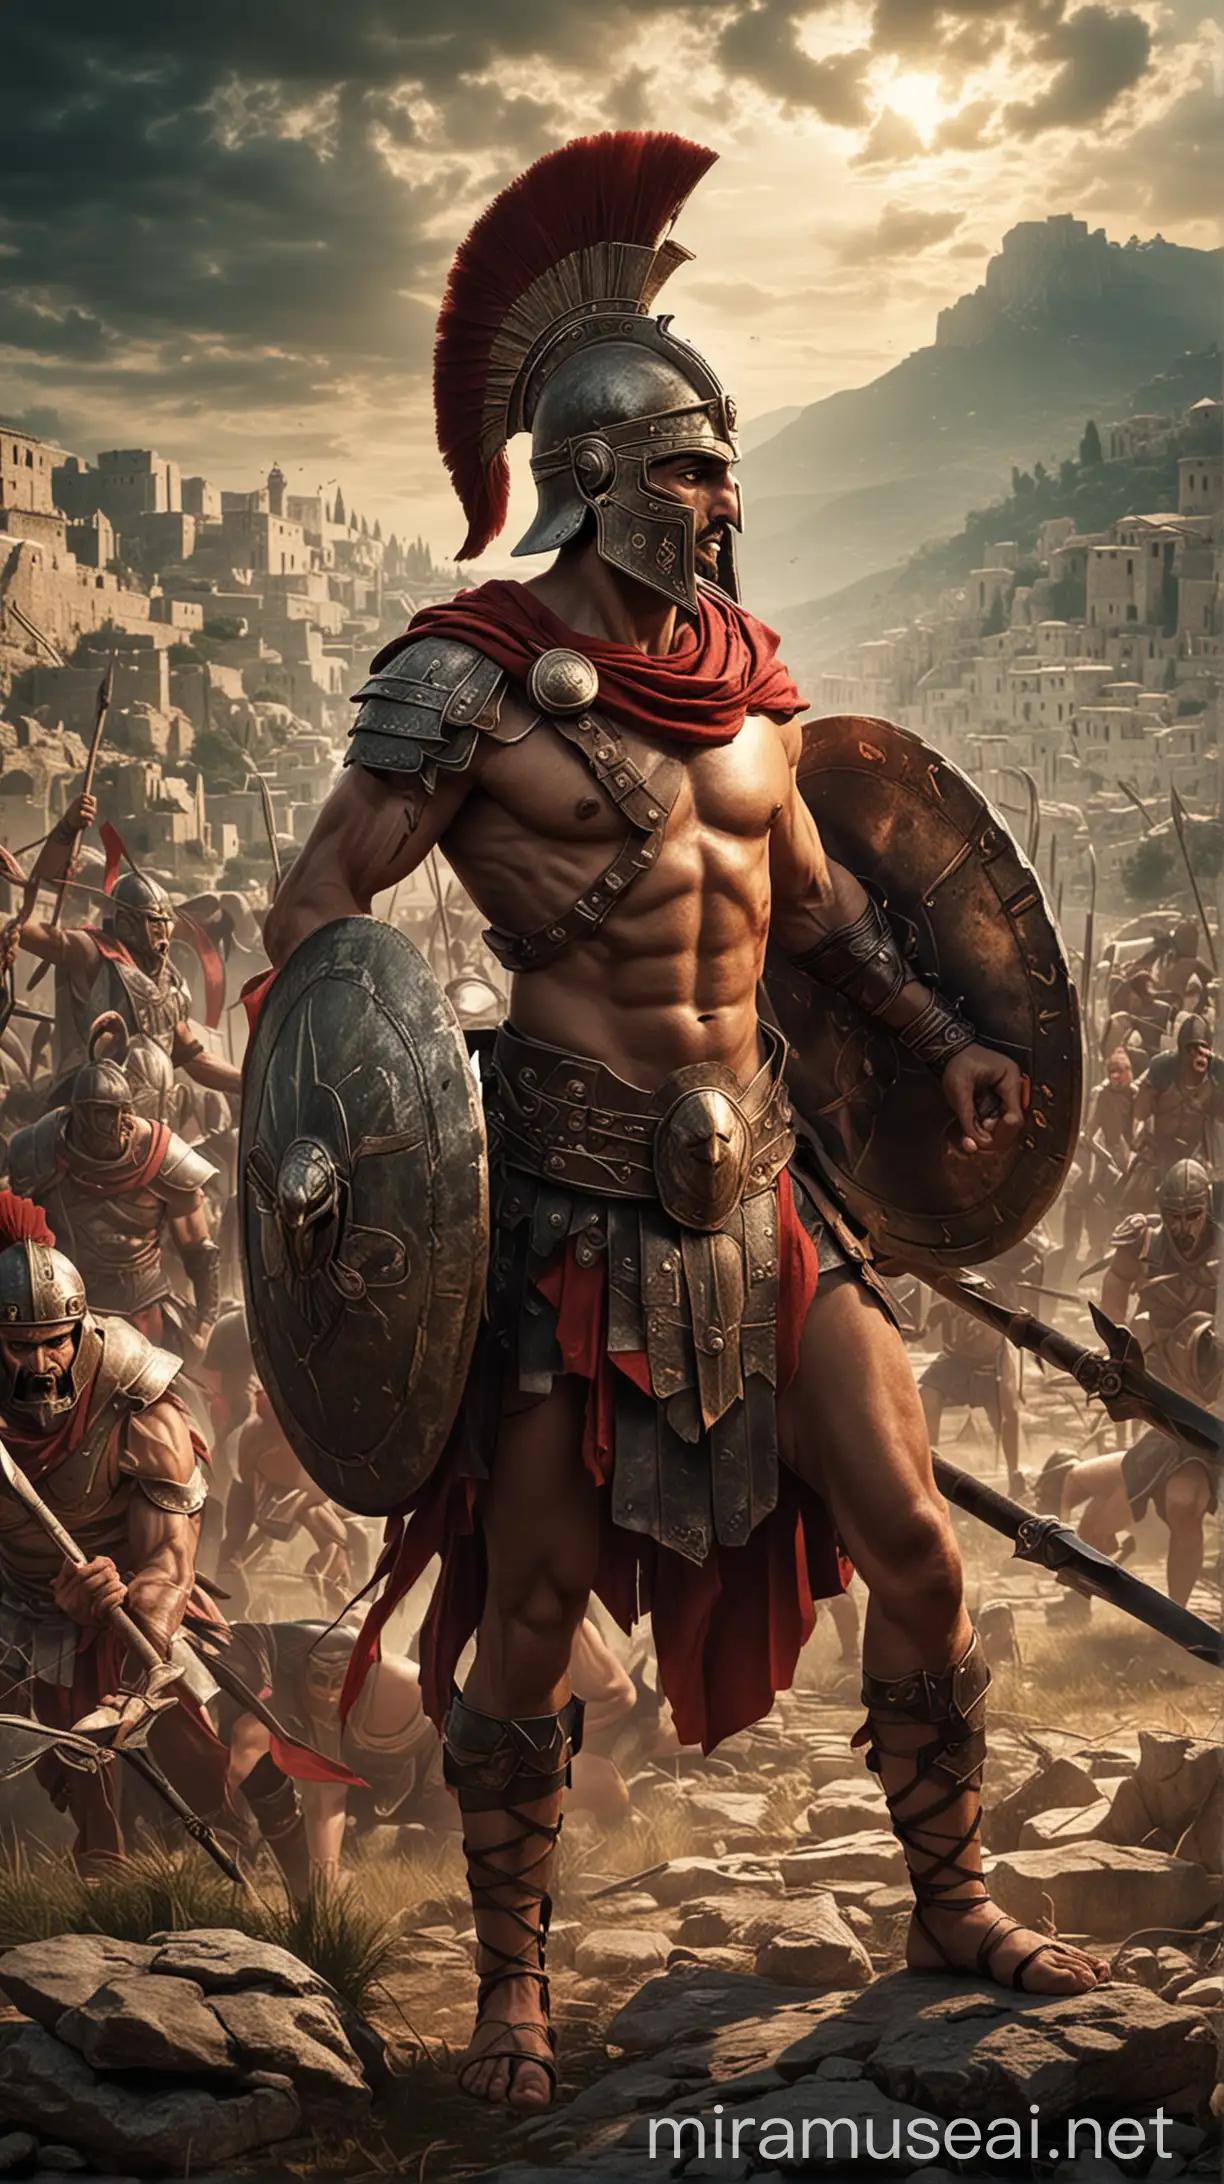 Fierce Hoplites Defending Their Cities